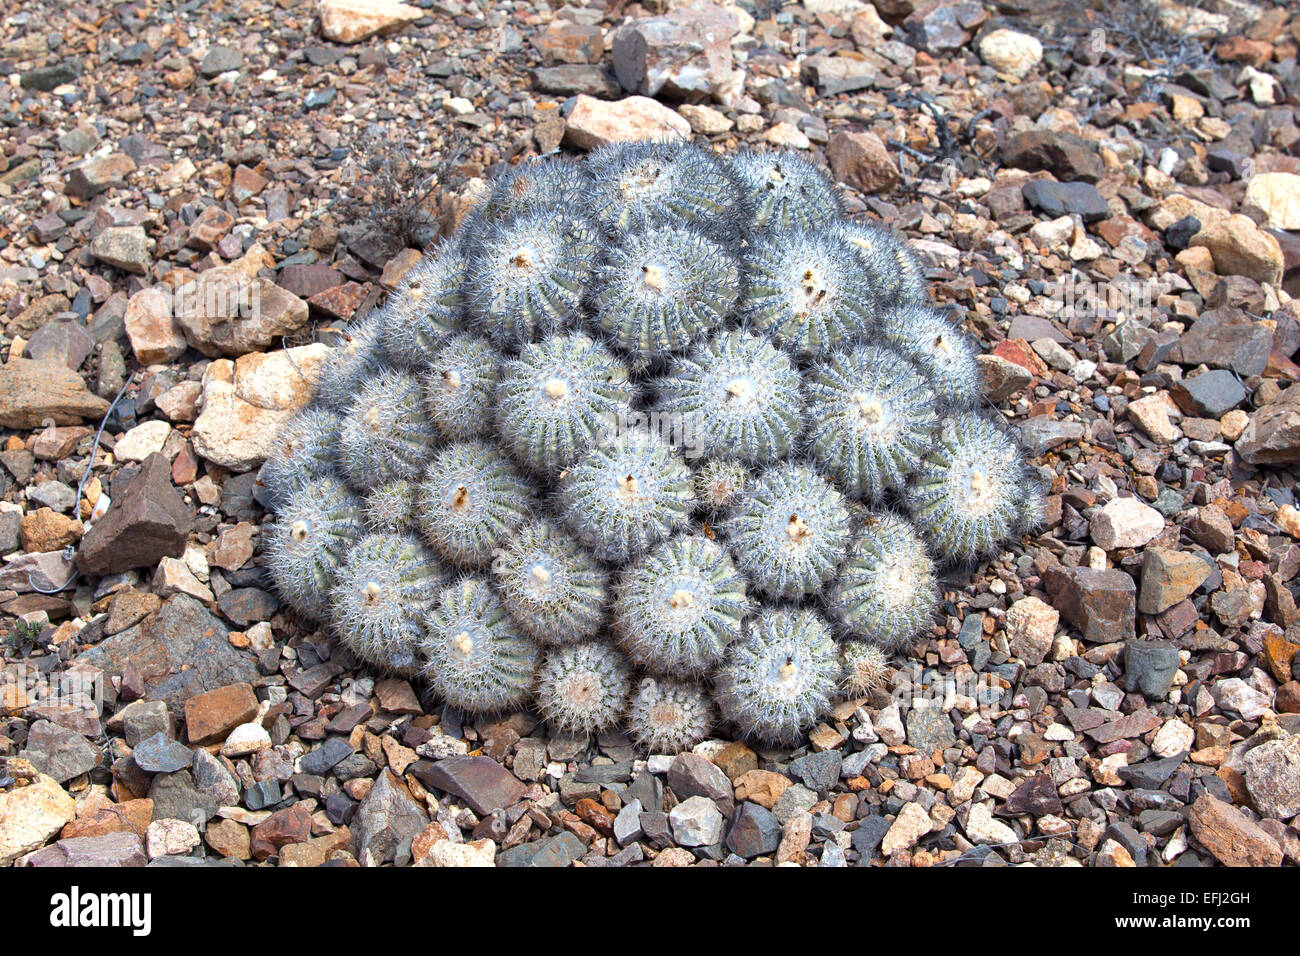 Copiapoa cinerascens, una planta endémica de grasa del Parque Nacional Pan de Azucar. Región de Antofagasta y Atacama. Chile. Foto de stock